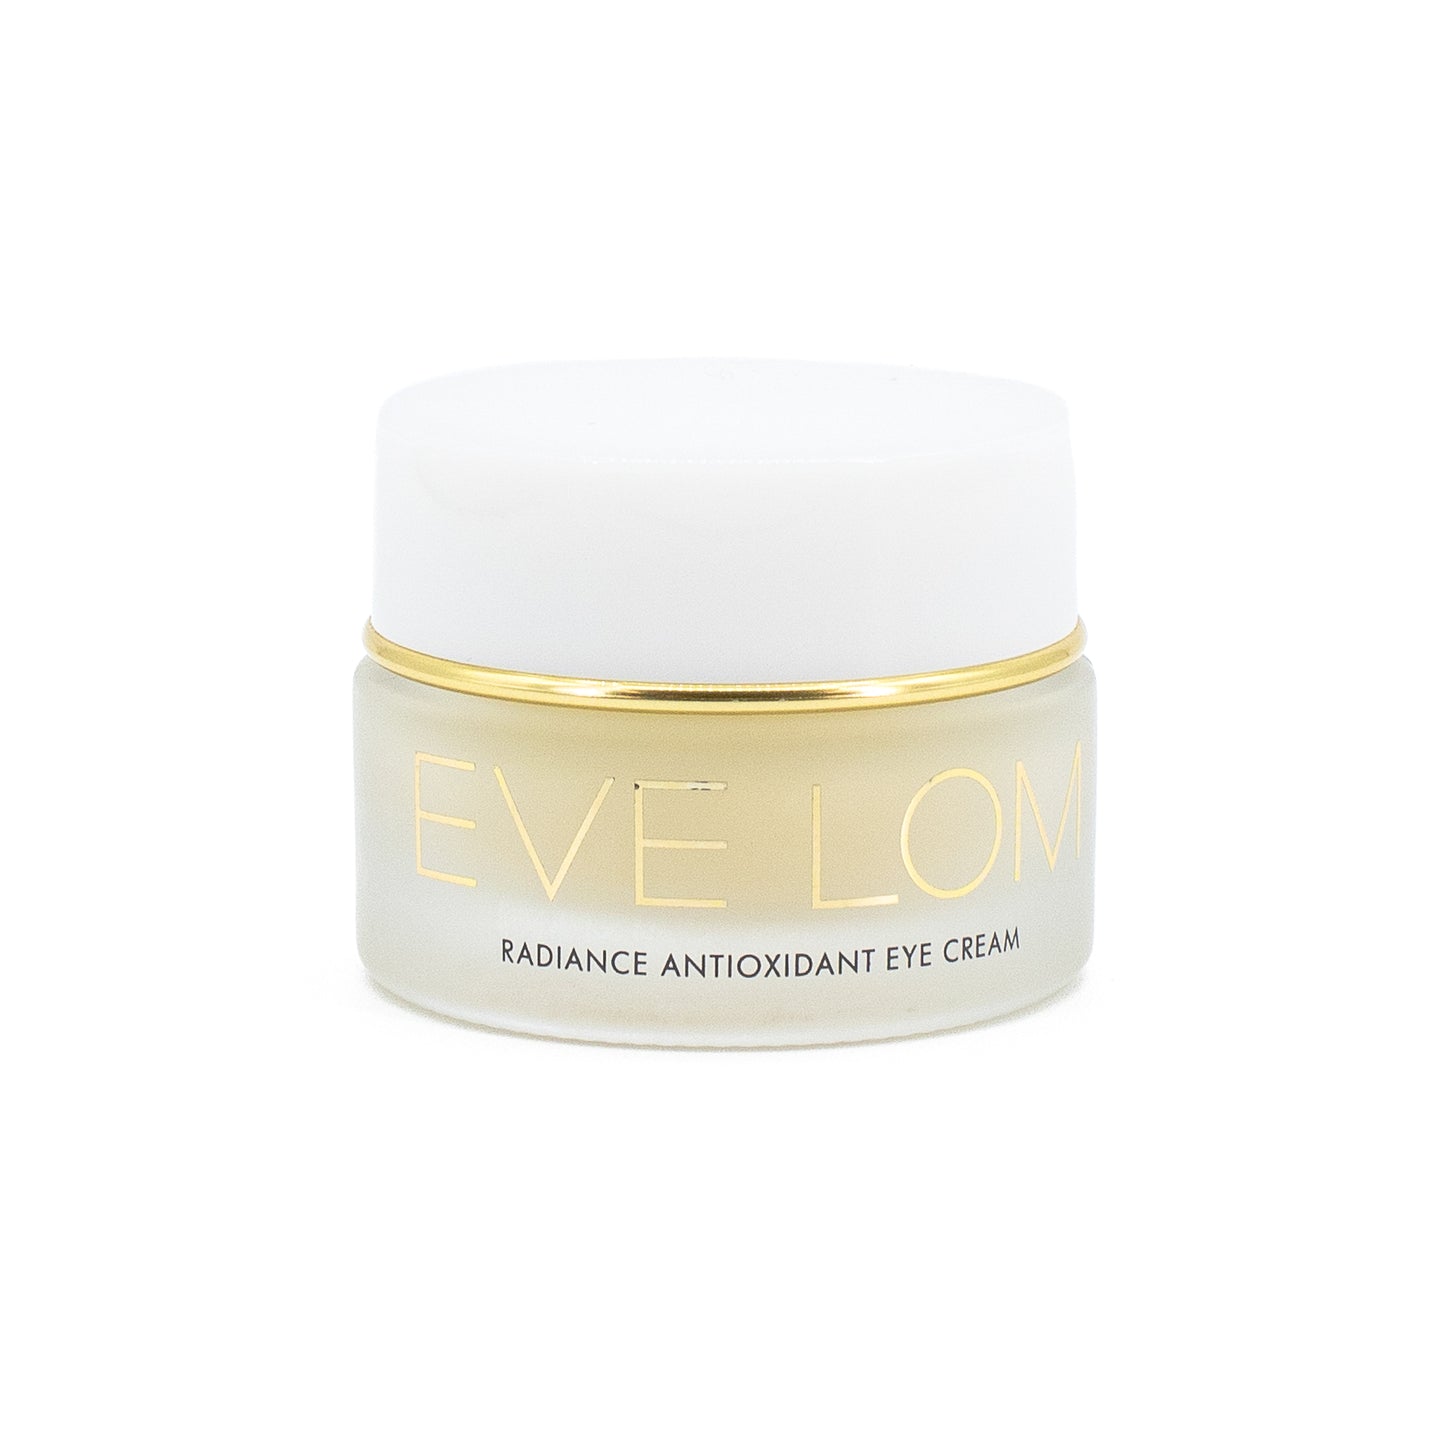 EVE LOM Radiance Antioxidant Eye Cream 0.5oz - Imperfect Box